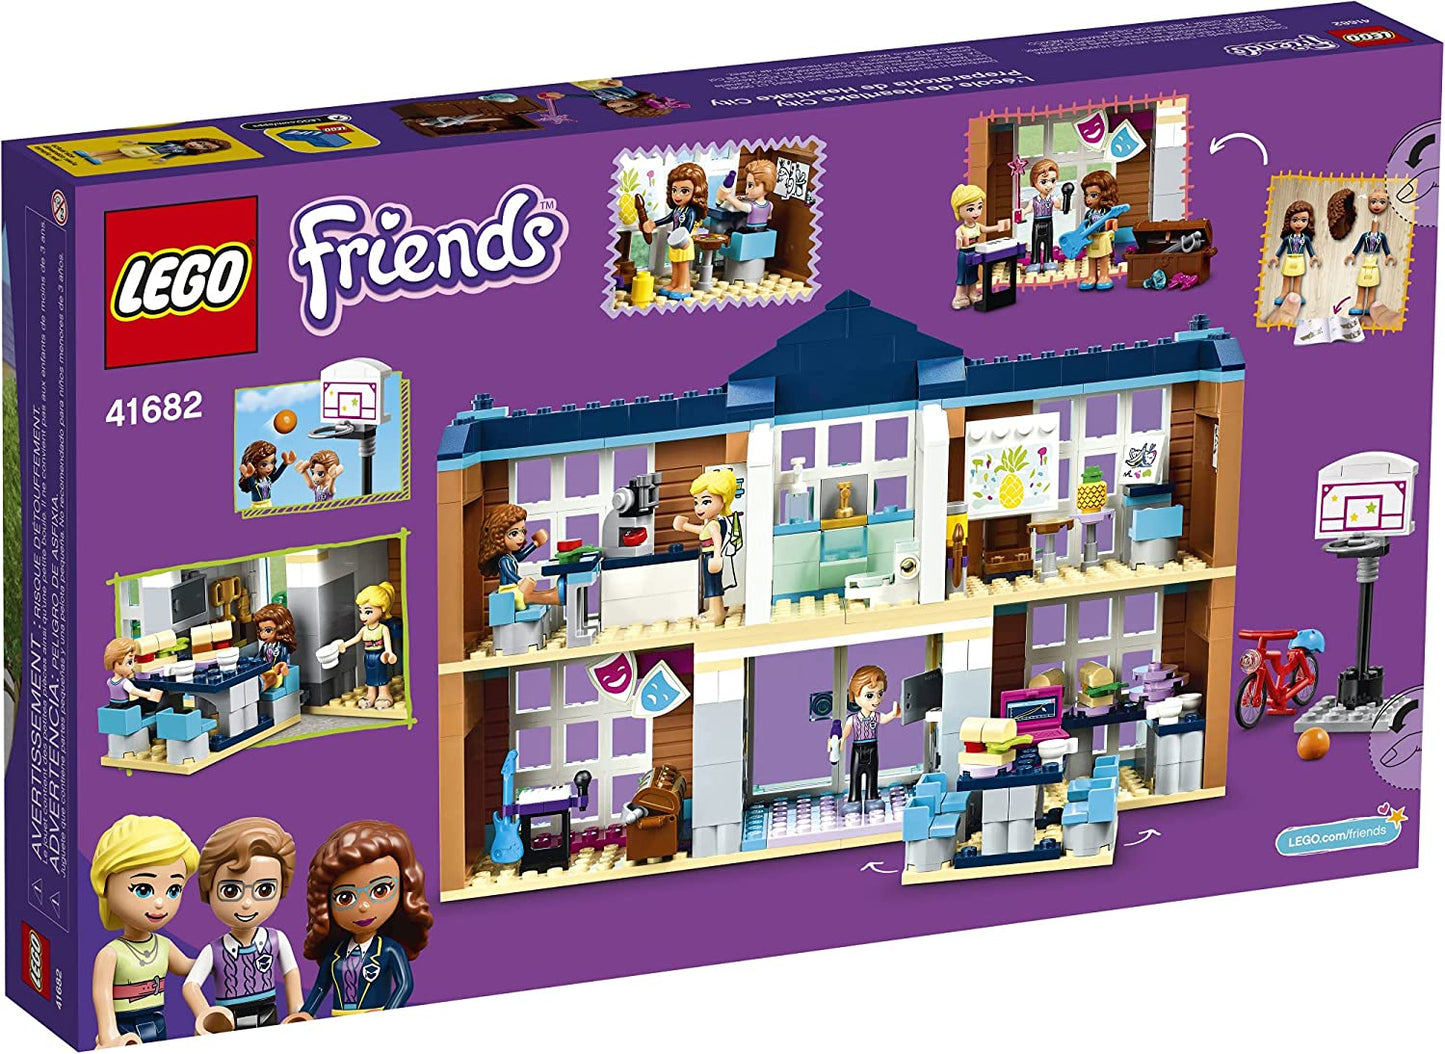 LEGO Friends Heartlake City School - 605 Pieces (41682)